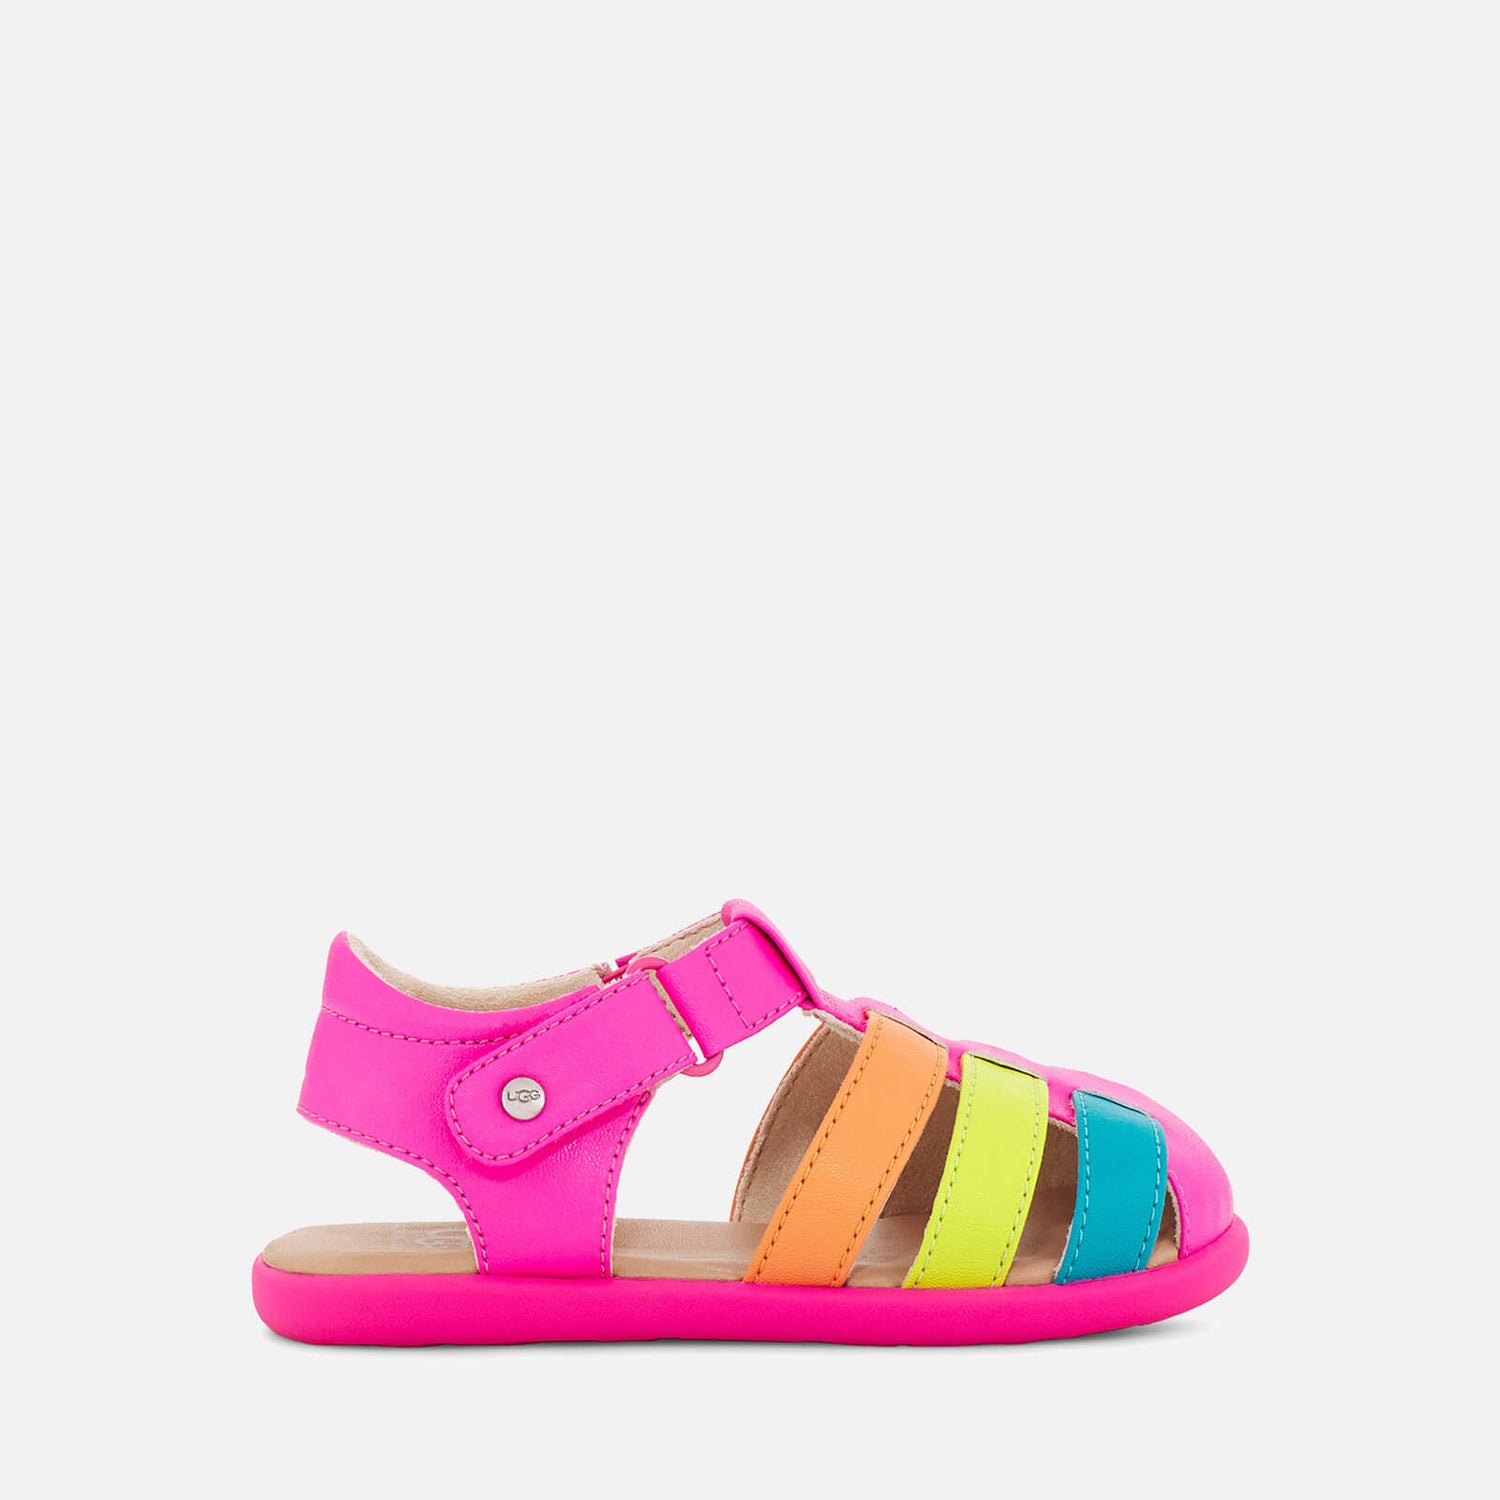 UGG Toddlers' Kolding Sandals - Pink Rainbow - UK 5 Toddler